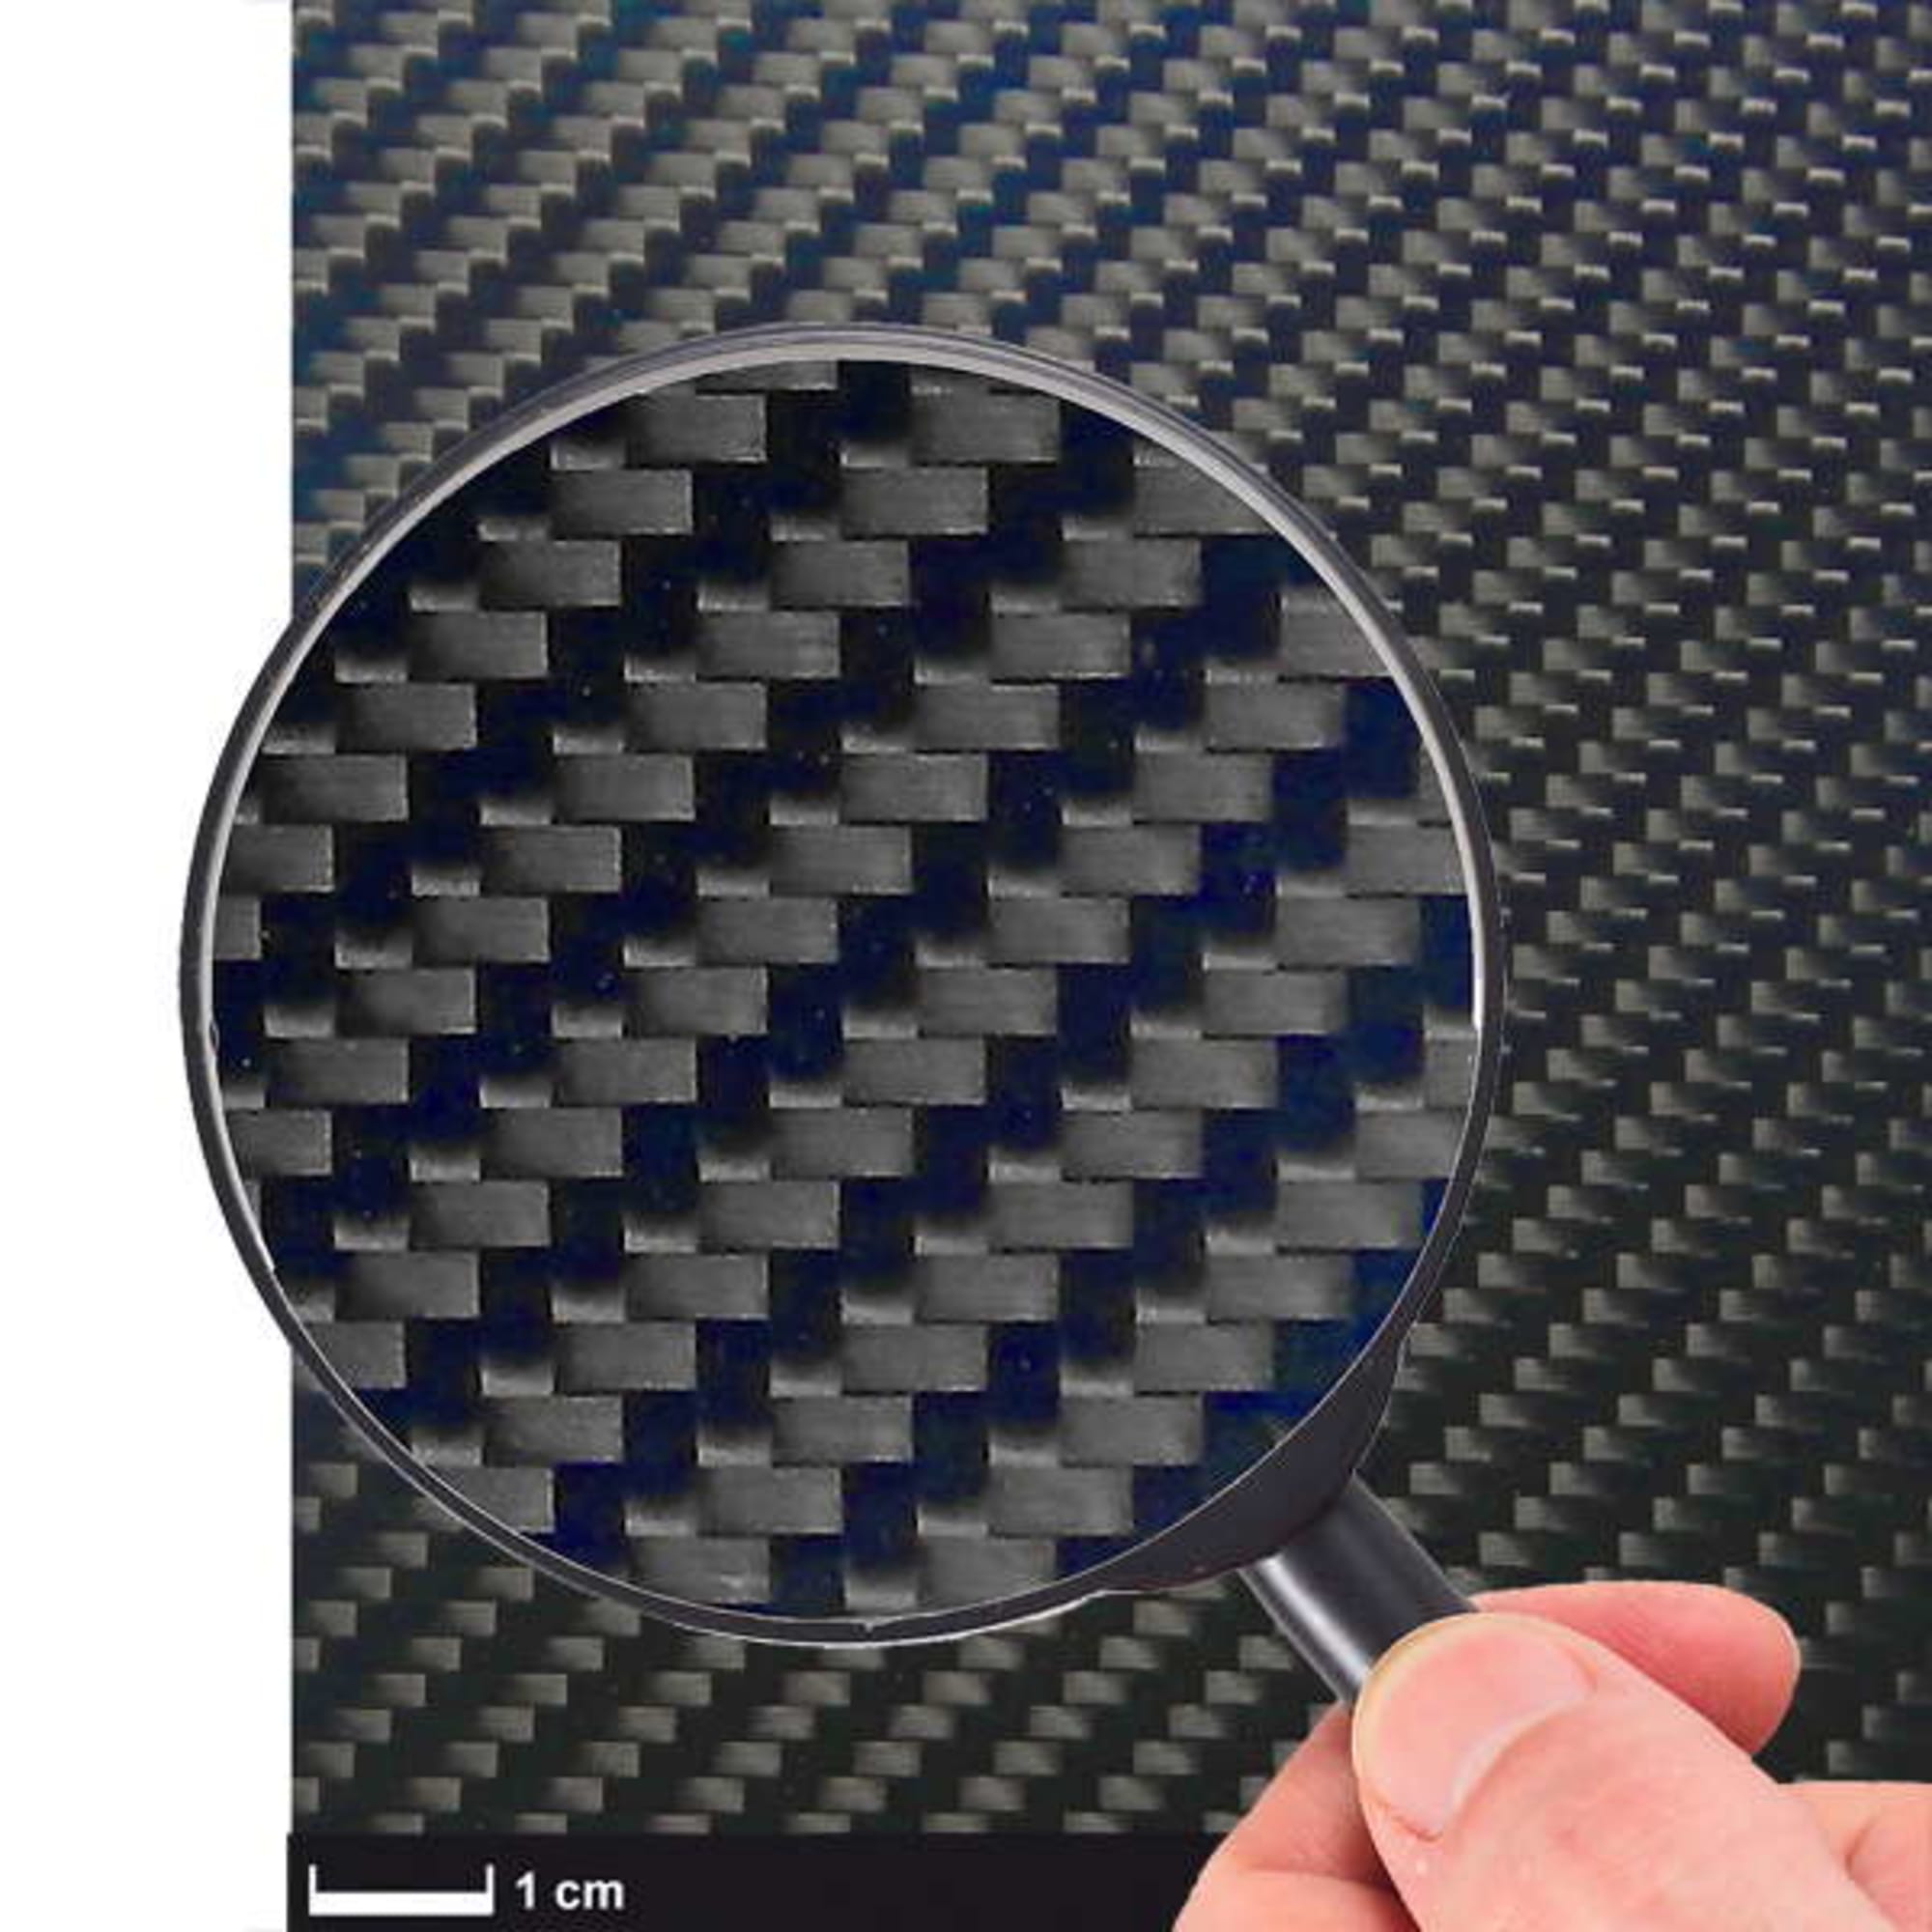 Carbon Fibre Plates - Browse products by C-Tech